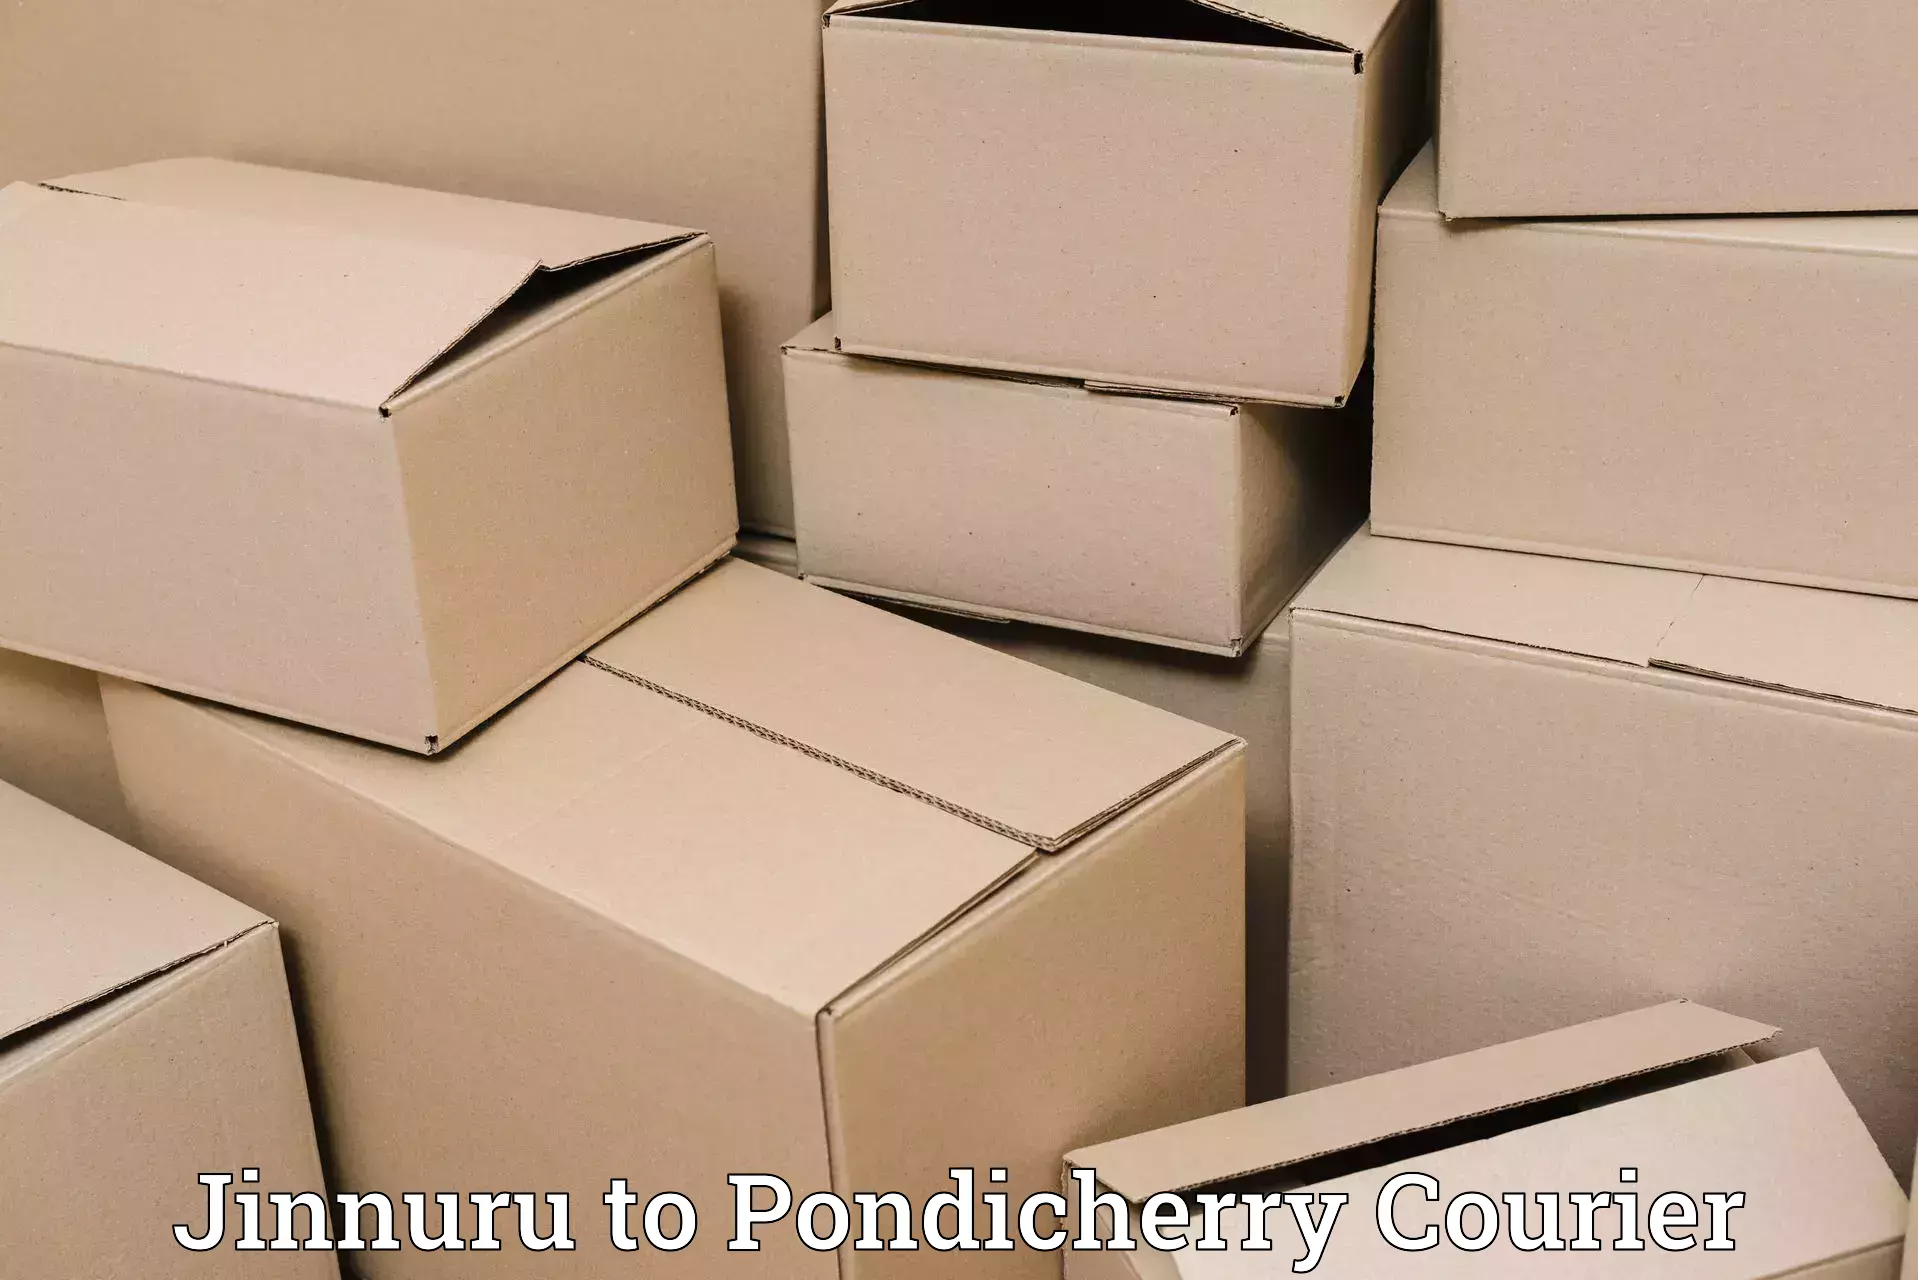 Next-day freight services Jinnuru to Pondicherry